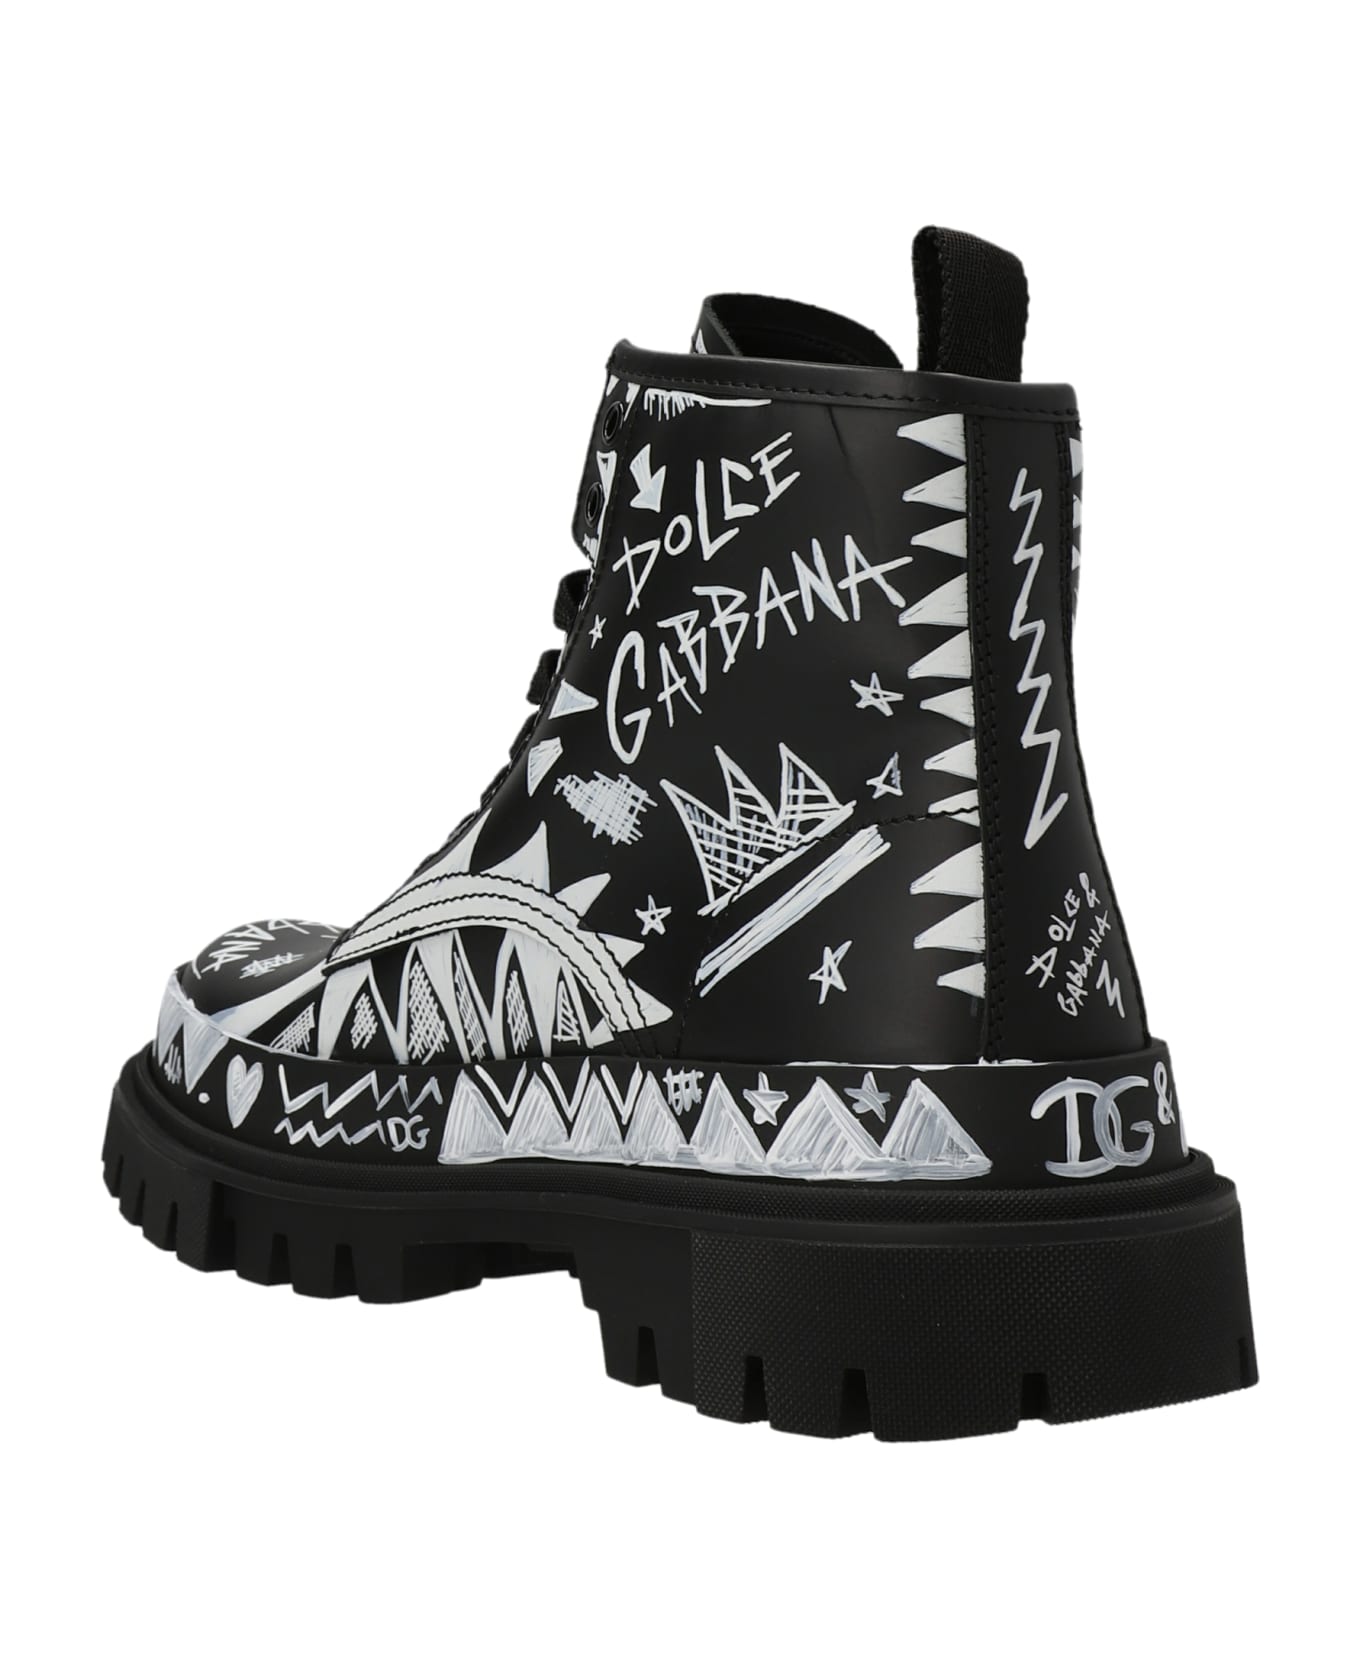 Dolce & Gabbana 'darkside' Combat Boots - White/Black